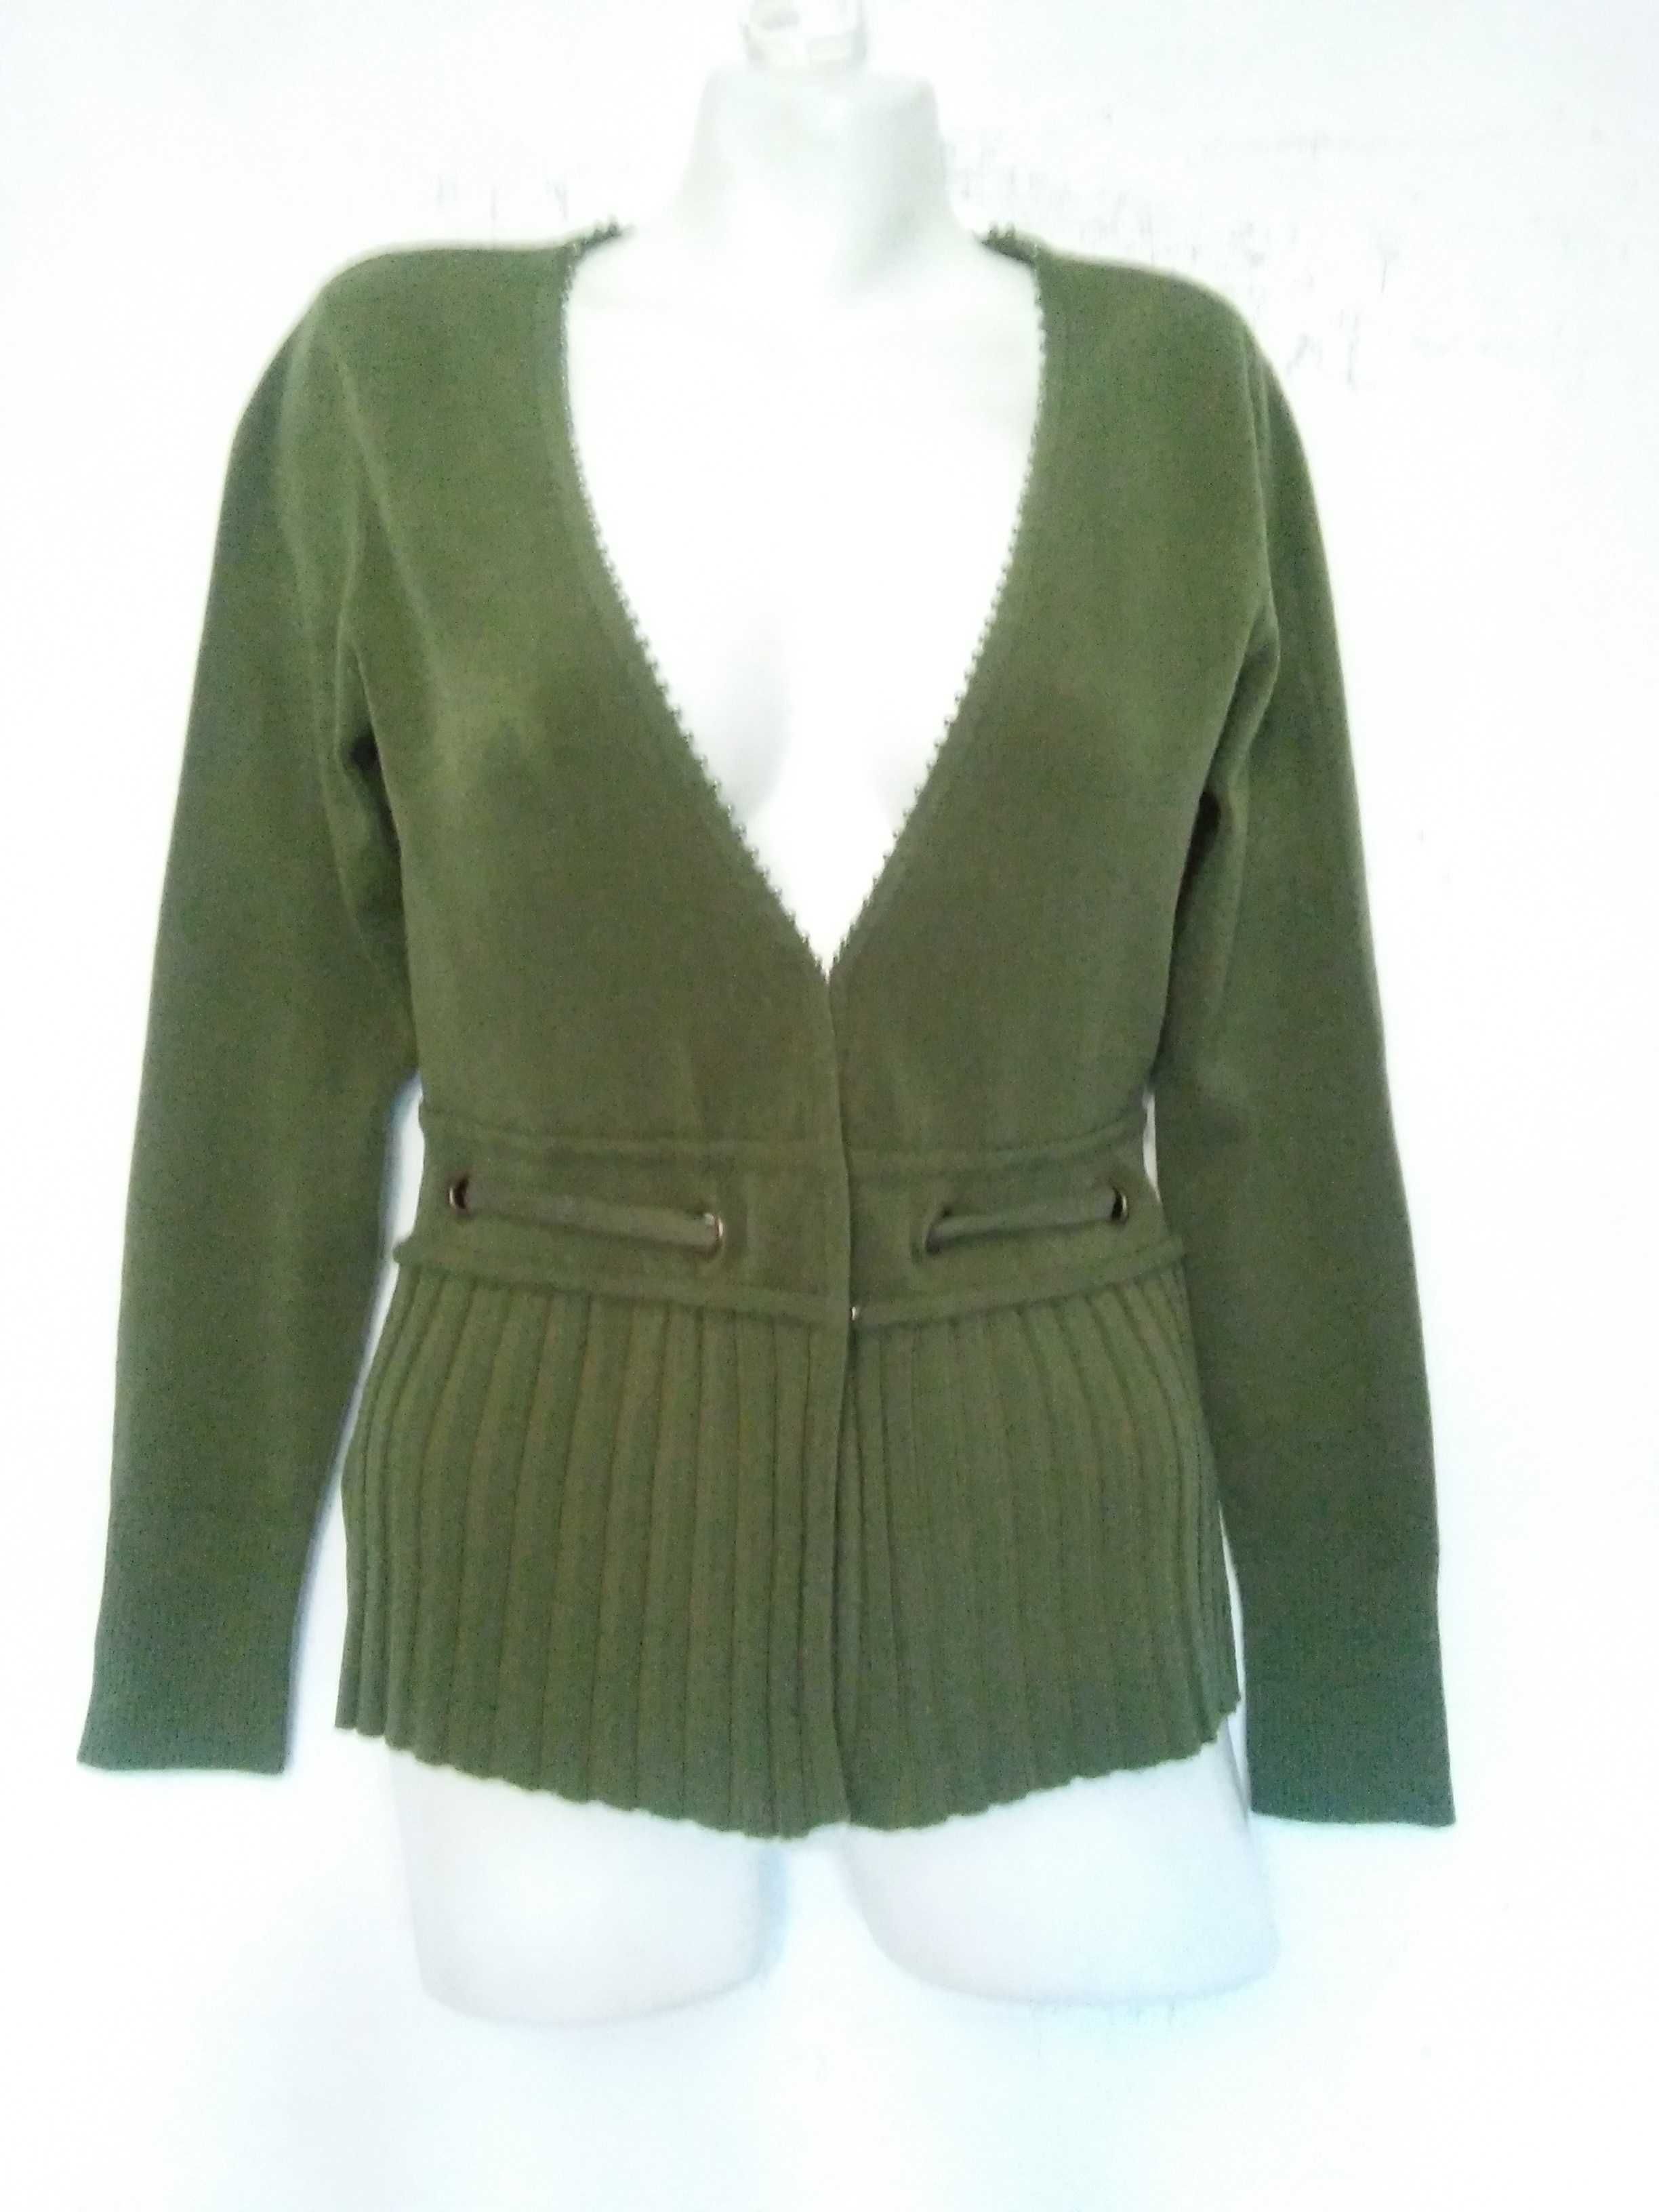 Oliwkowy zielony sweter kardigan kaszmir r.38 nowy